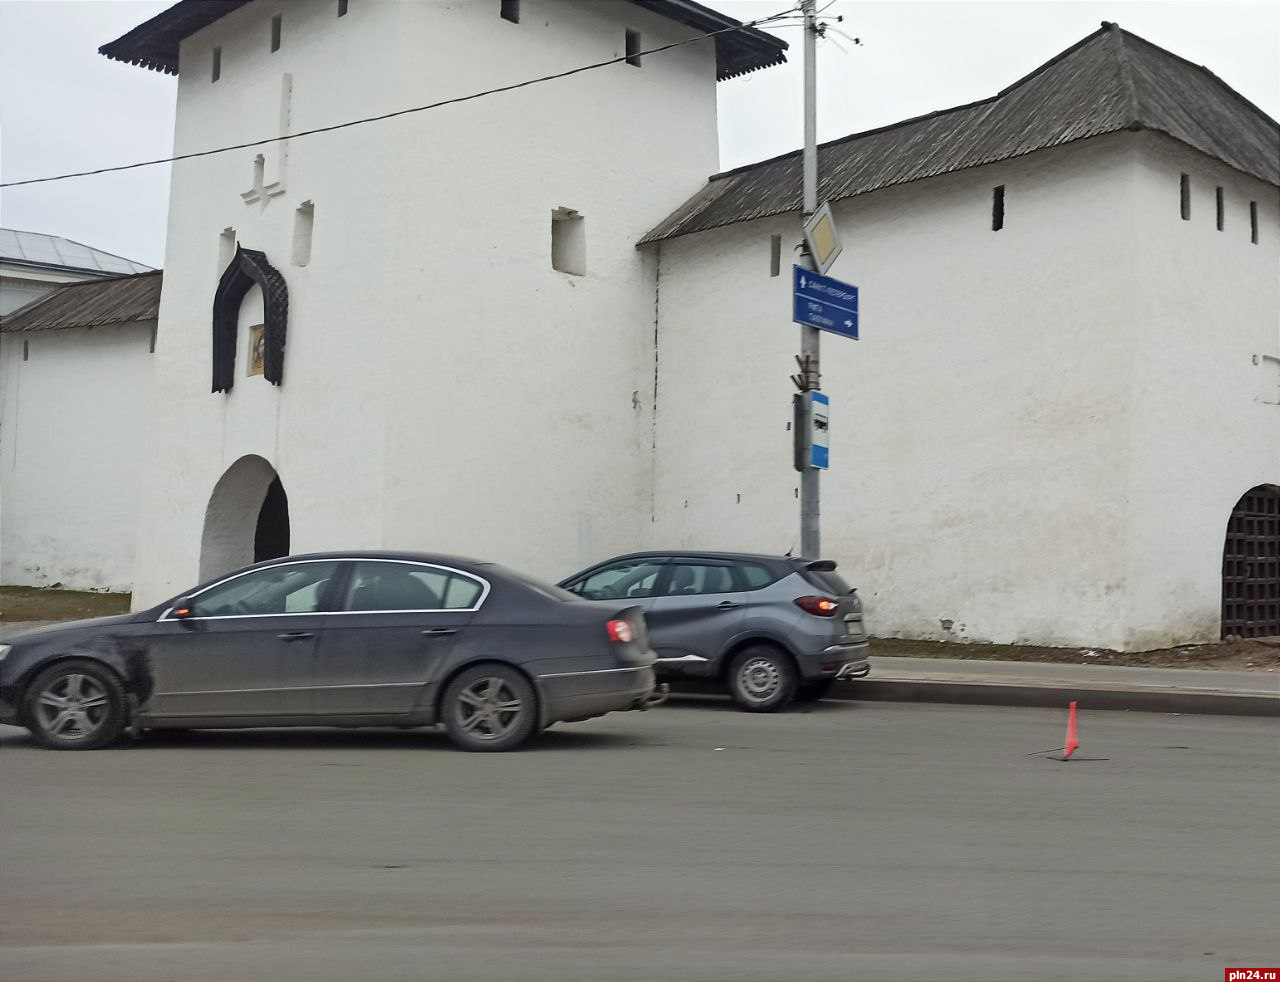 Два автомобиля учинили ДТП у Рыбницкой башни в Пскове